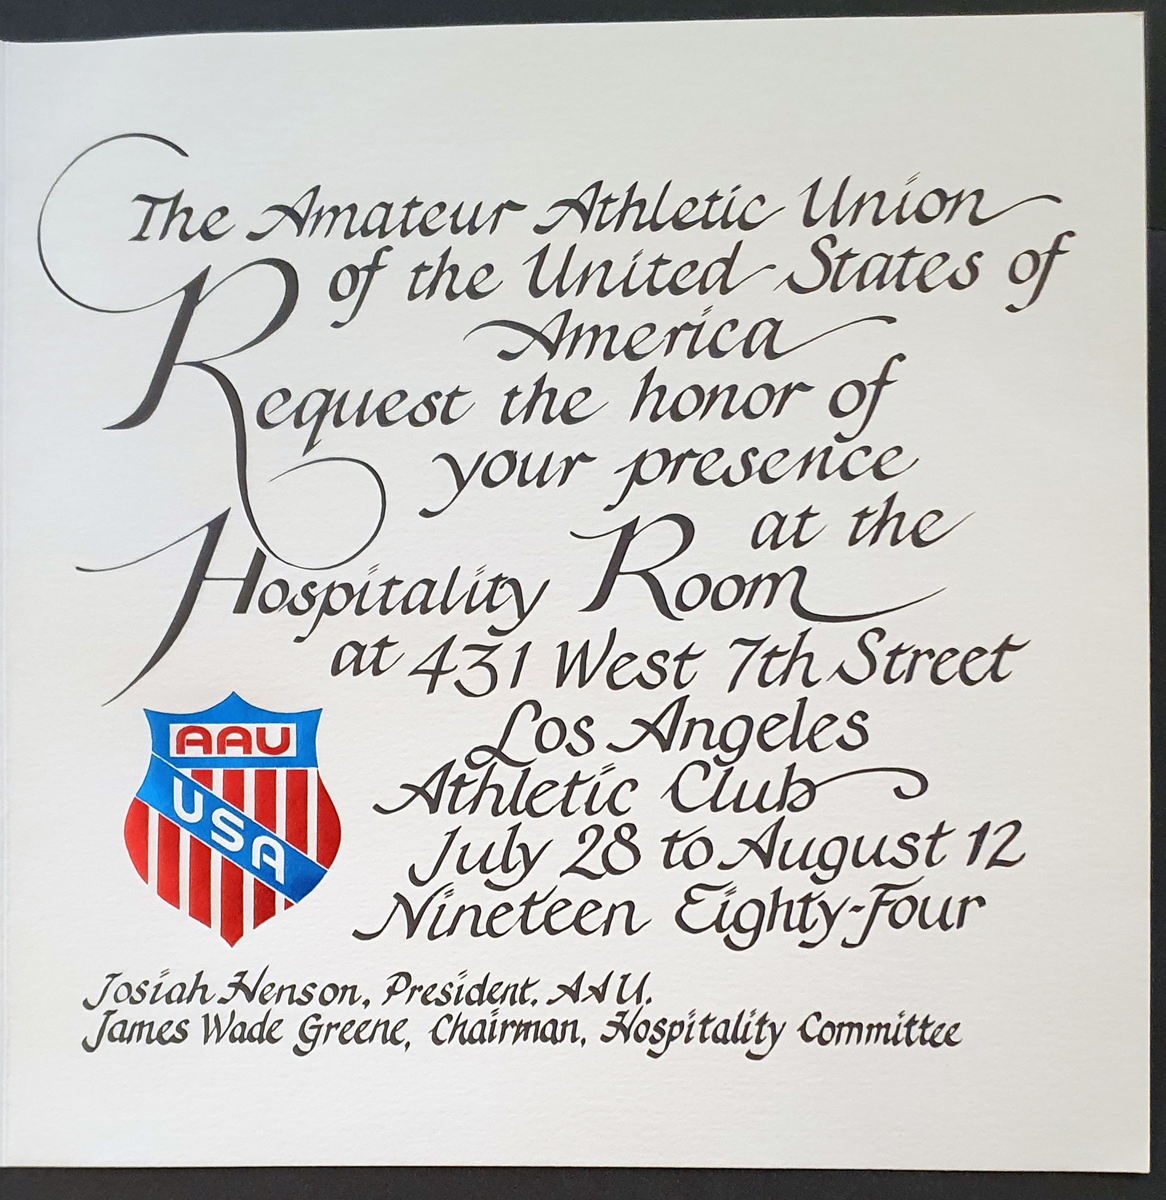 Invitasjon fra AAU (The Amateur Atheltic Union of USA) til å komme til deres klubbhus. Den amerikanske ørnen er preget i papiret. Adgangskort vedlagt.